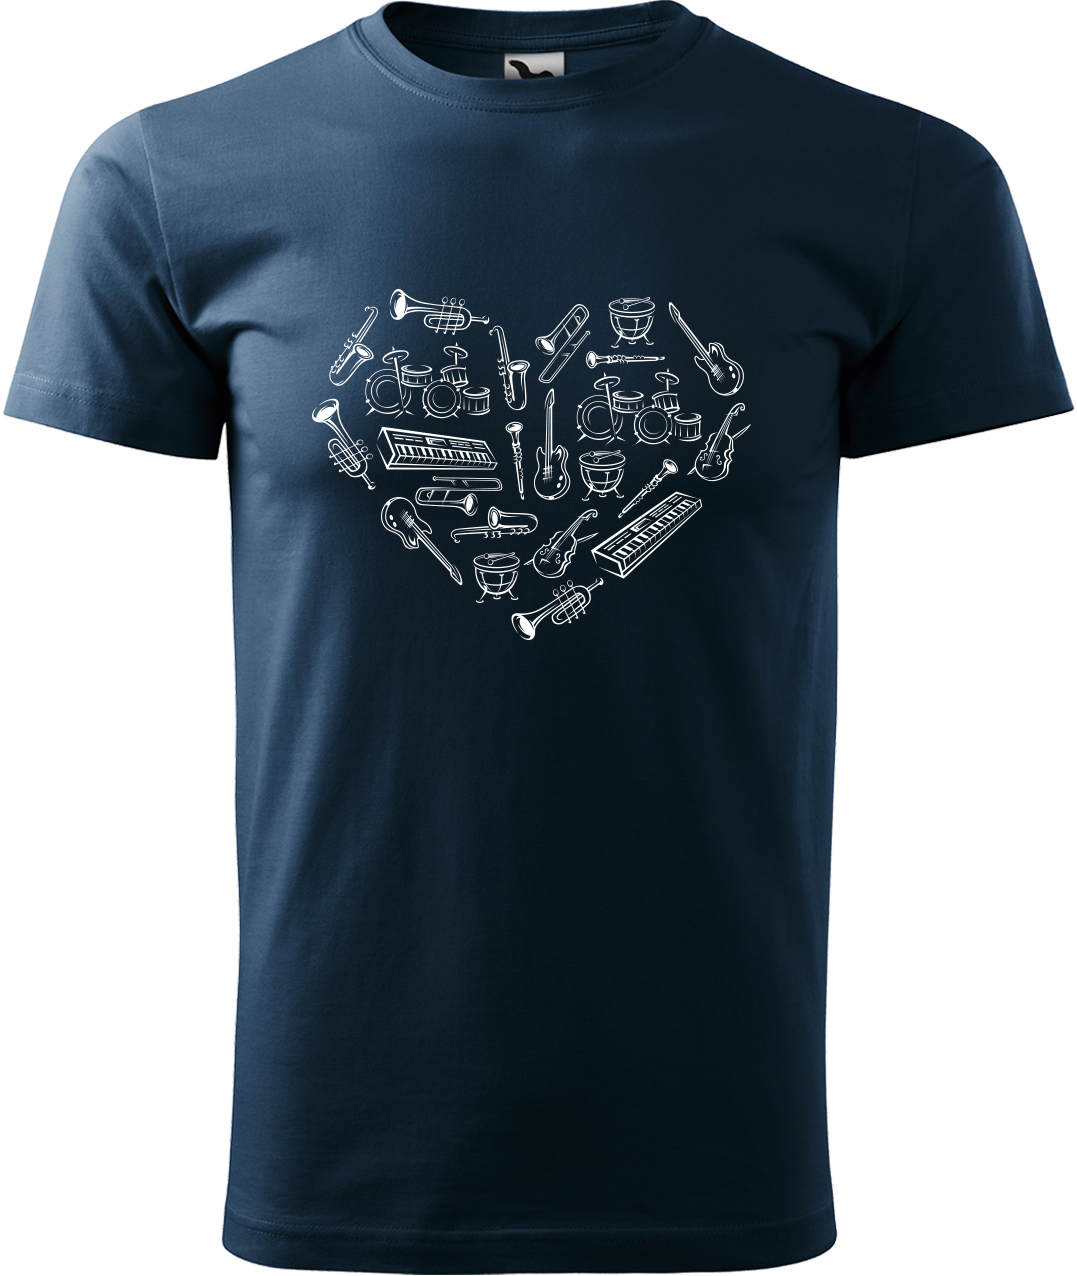 Pánské tričko s kytarou - Srdce z nástrojů Velikost: XL, Barva: Námořní modrá (02), Střih: pánský